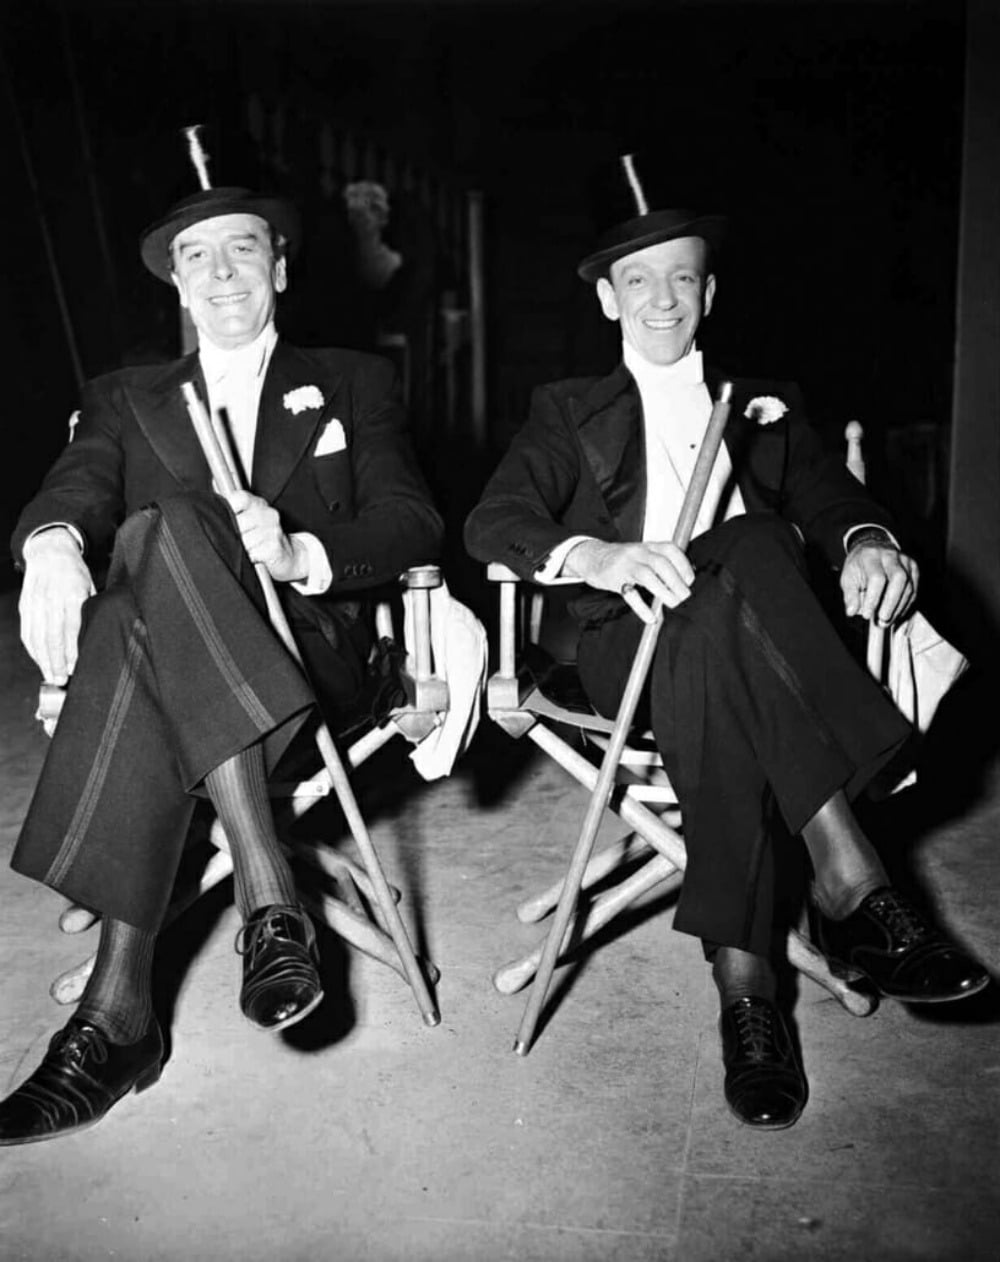 Trái: Jack Buchanan với tất lụa có gân và giày derby. Phải: Fred Astaire với giày oxfords captoe buộc chéo. Cả hai cùng mang vớ cao để không lộ bắp chân khi ngồi. Trên đầu đội nón top hat, tay cầm gậy. 